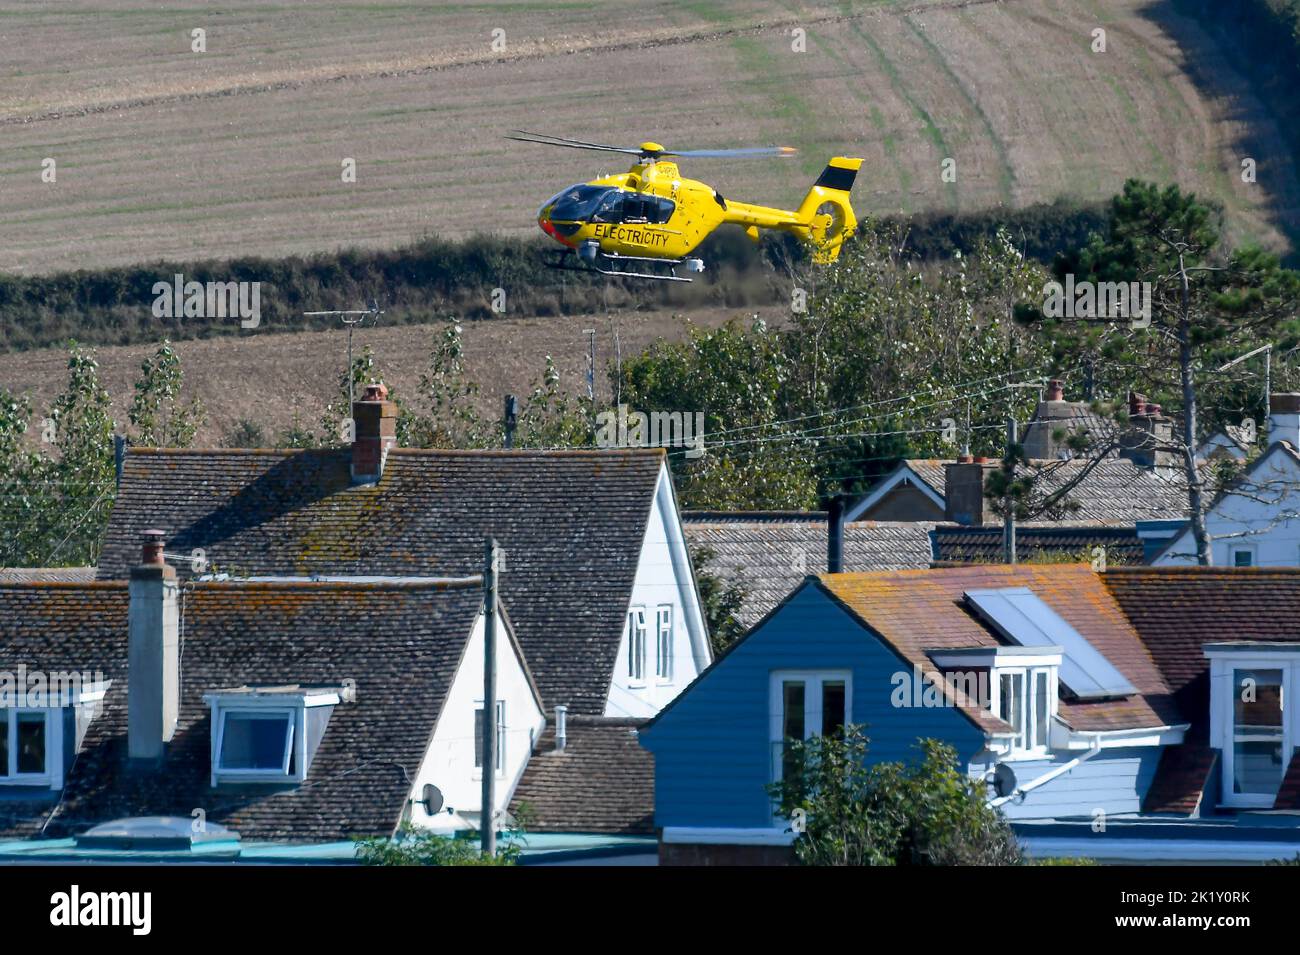 Burton Bradstock, Dorset, Reino Unido, 21st de septiembre de 2022. Un helicóptero de electricidad amarillo volando bajo sobre líneas eléctricas comprobando si hay fallos cerca de las casas de Burton Bradstock en Dorset. Crédito de la imagen: Graham Hunt/Alamy Live News Foto de stock